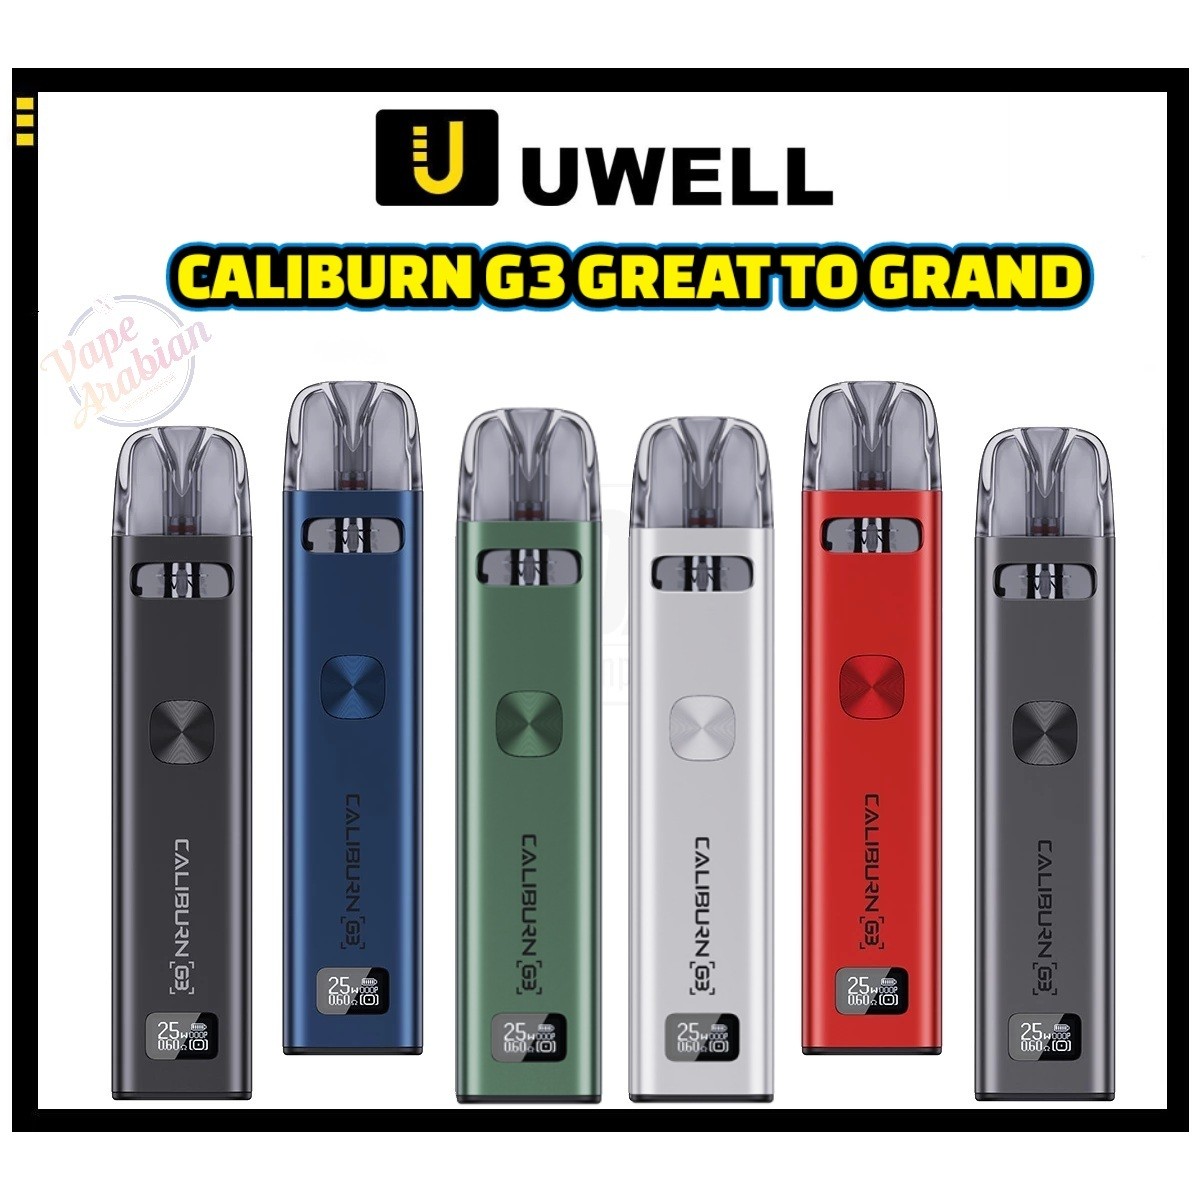 Authentic Uwell Caliburn G3 Vape Kit In UAE